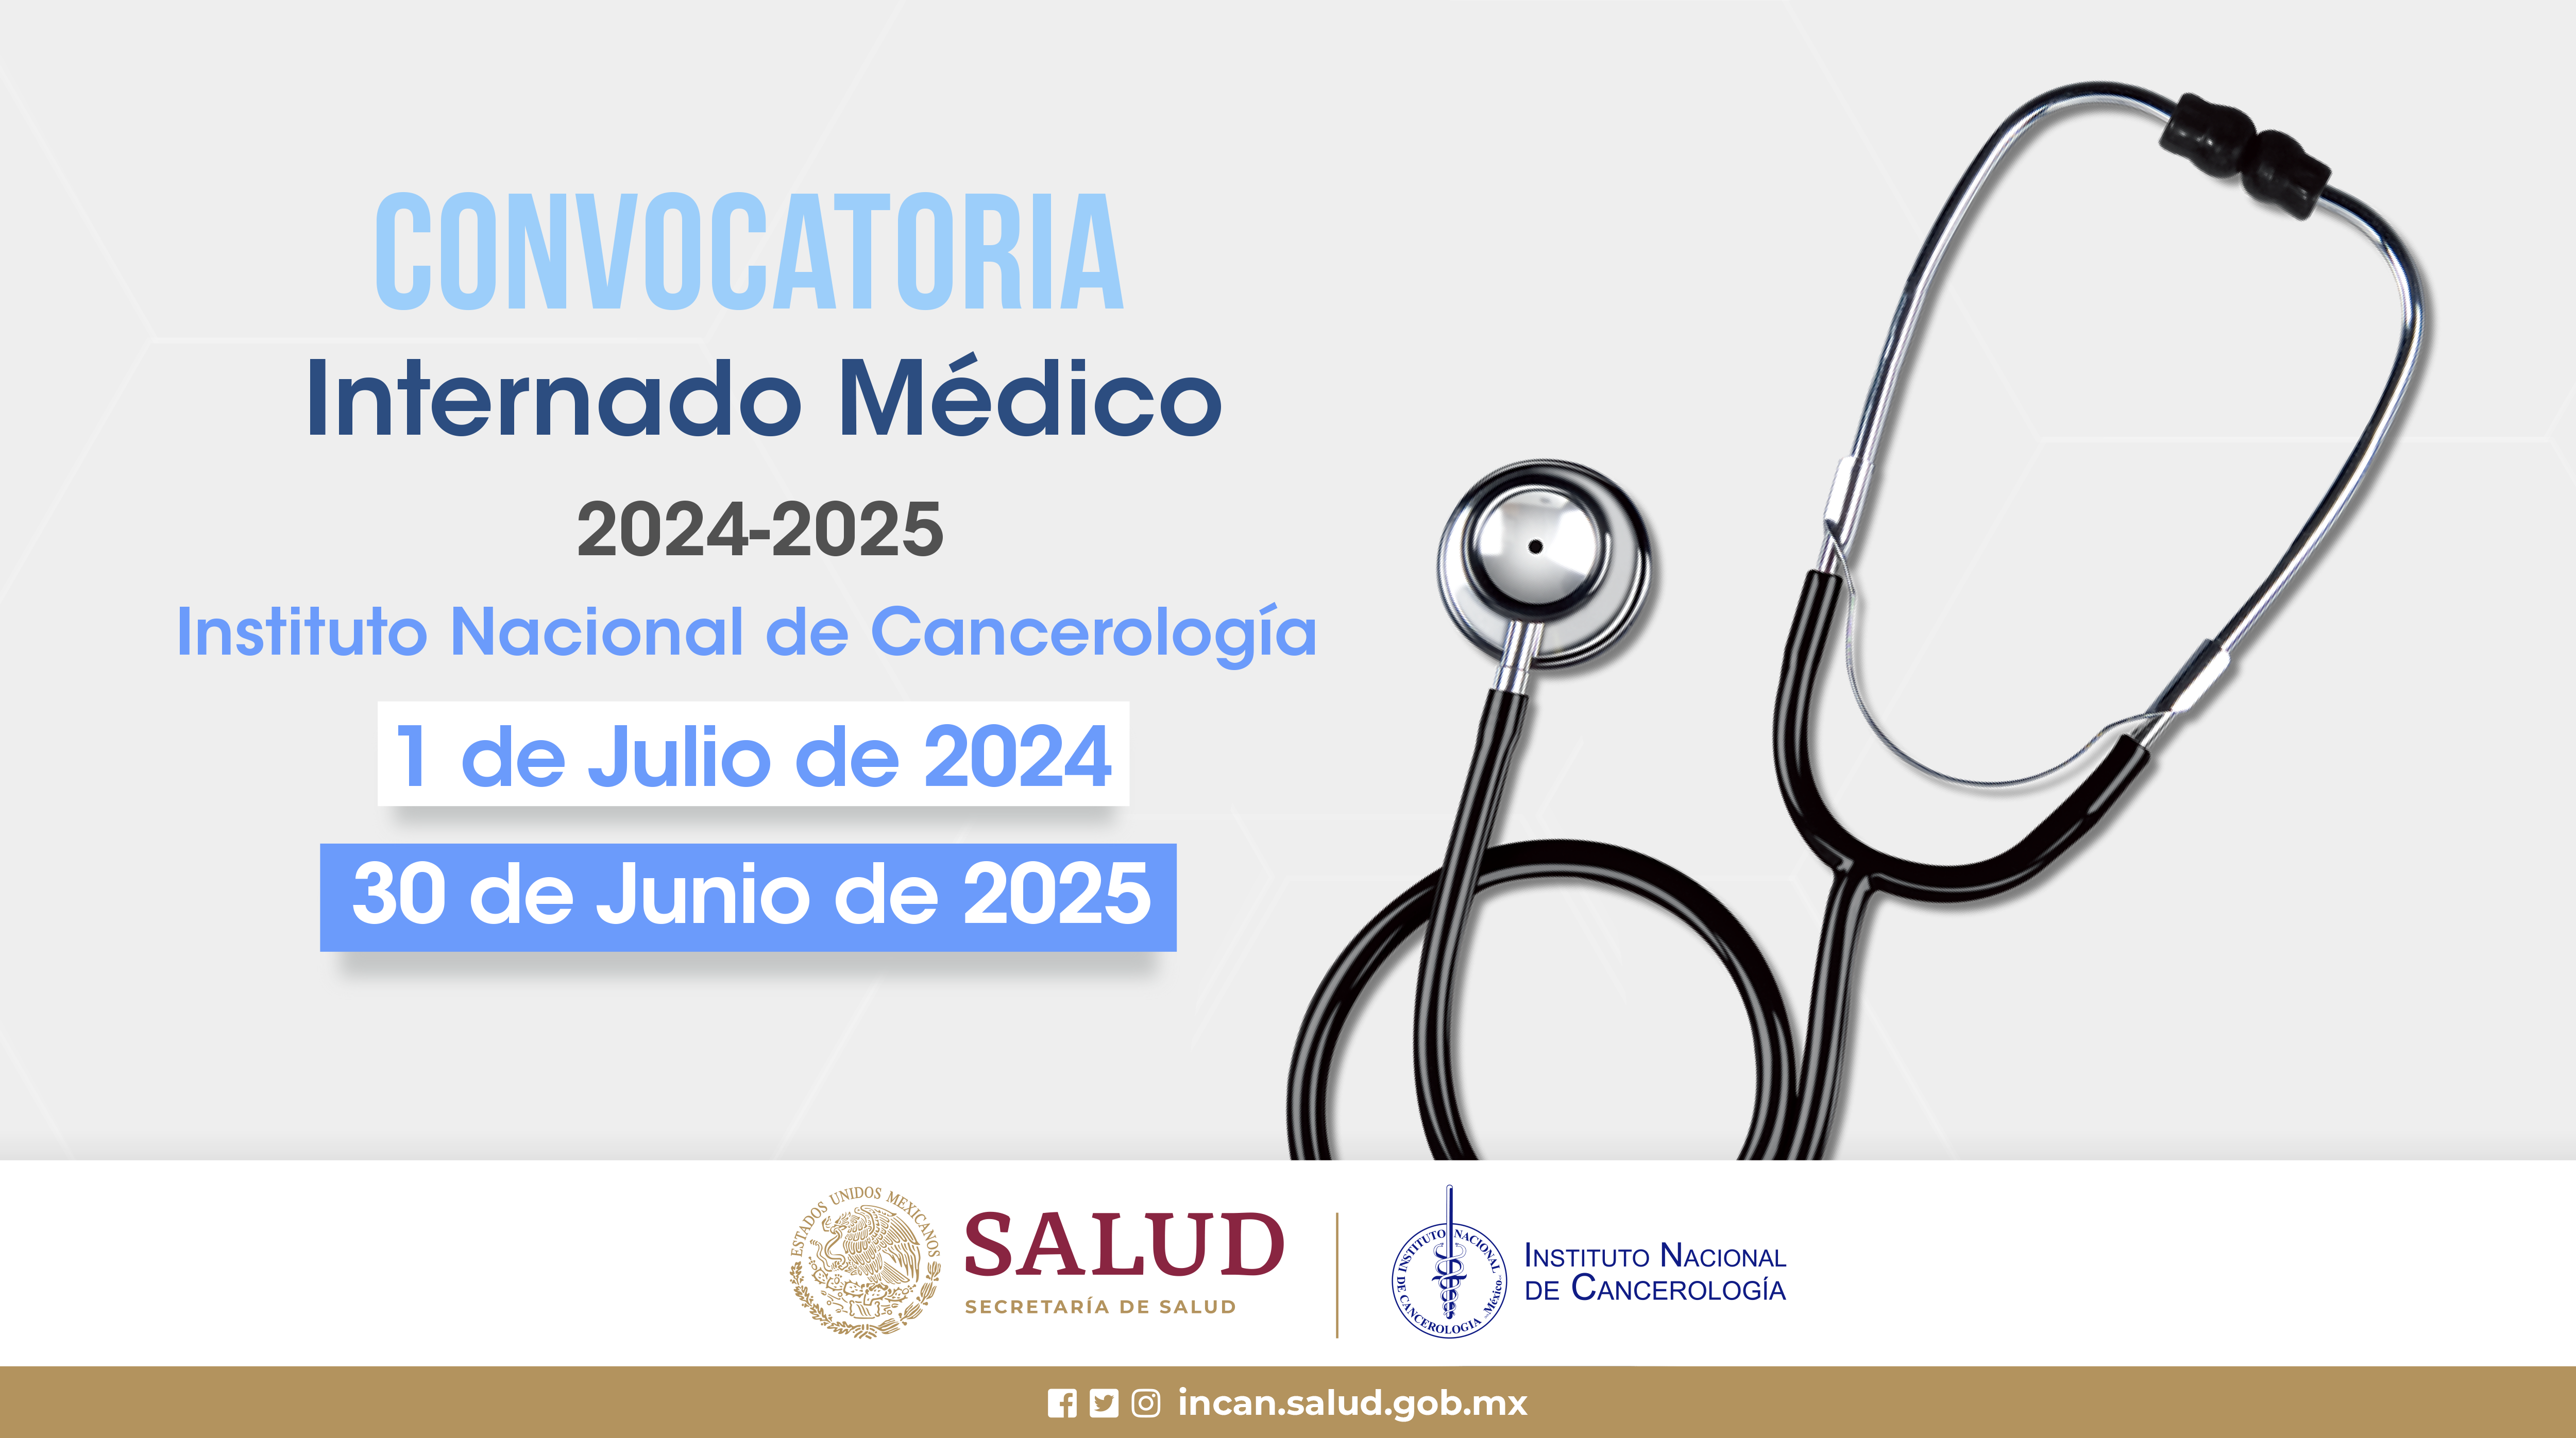 CONVOCATORIA A INTERNADO MÉDICO 2024-2025 INSTITUTO NACIONAL DE CANCEROLOGÍA